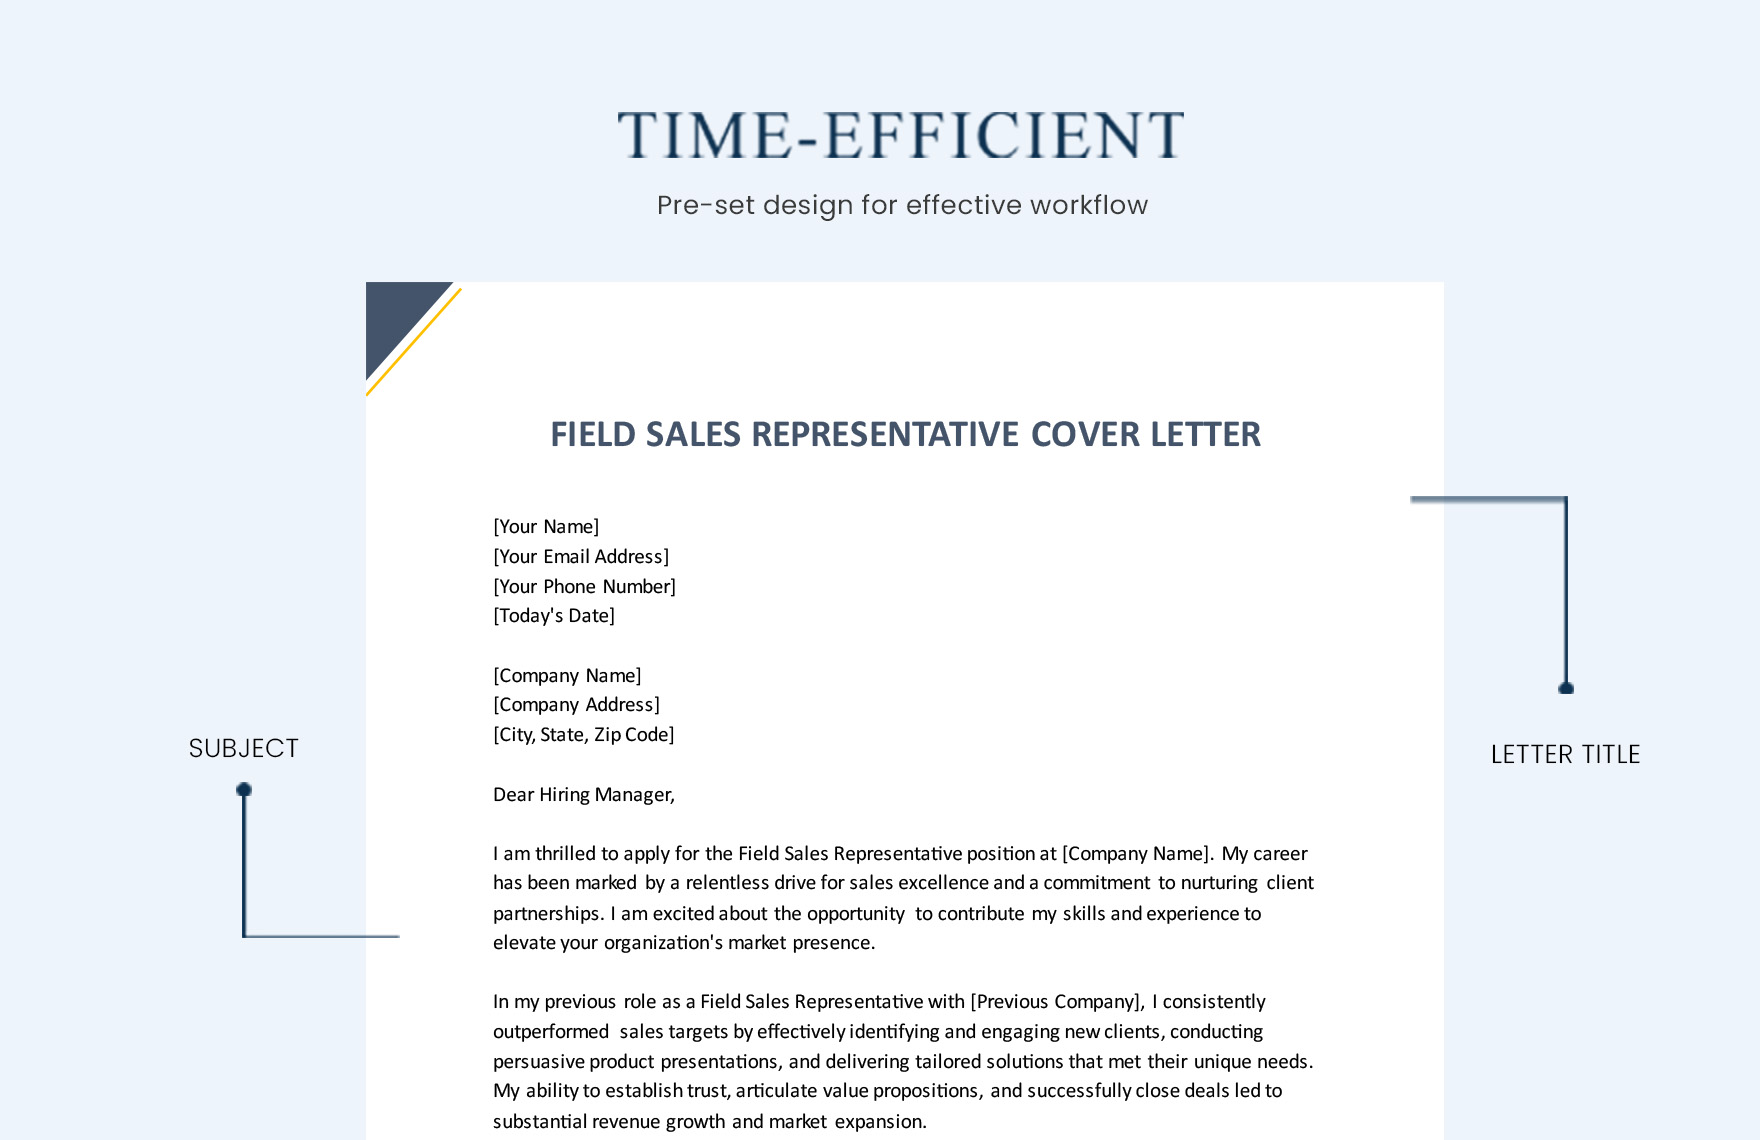 Field Sales Representative Cover Letter